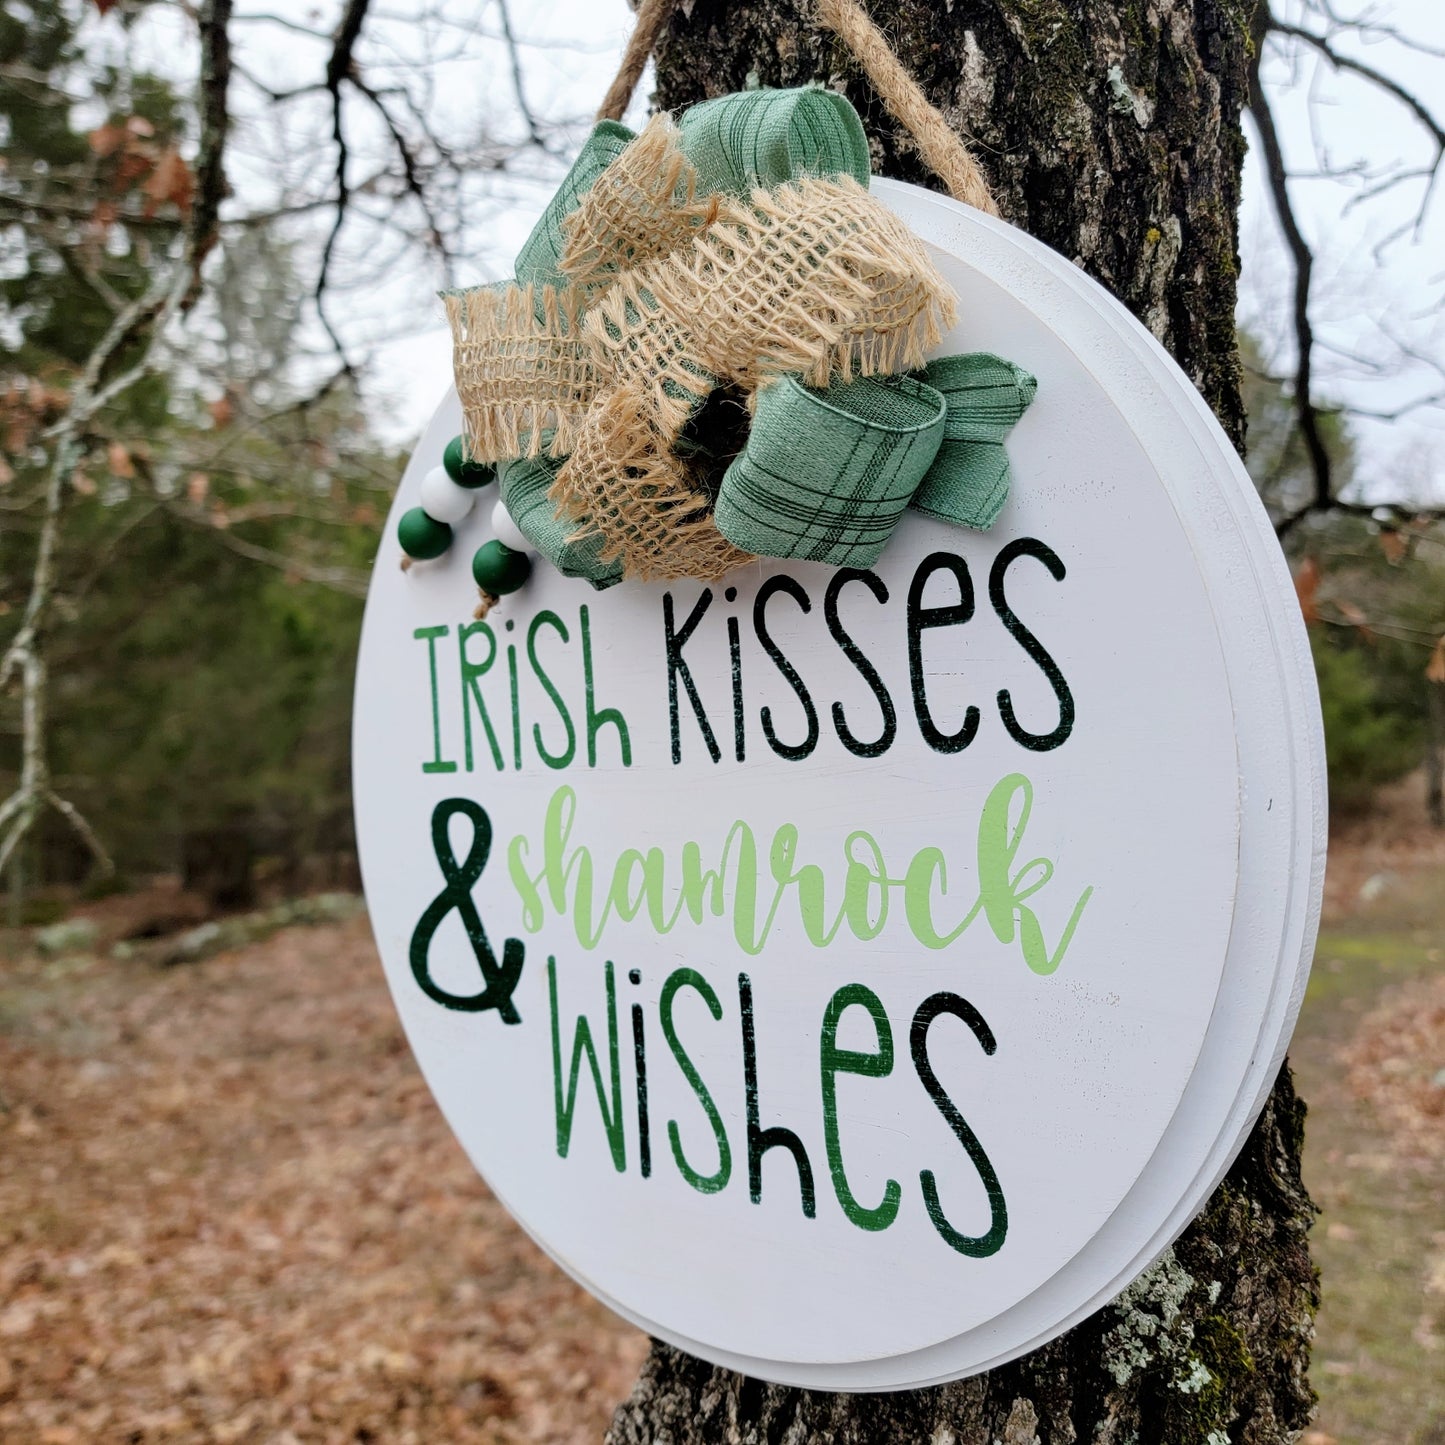 Irish Kisses & Shamrock Wishes!